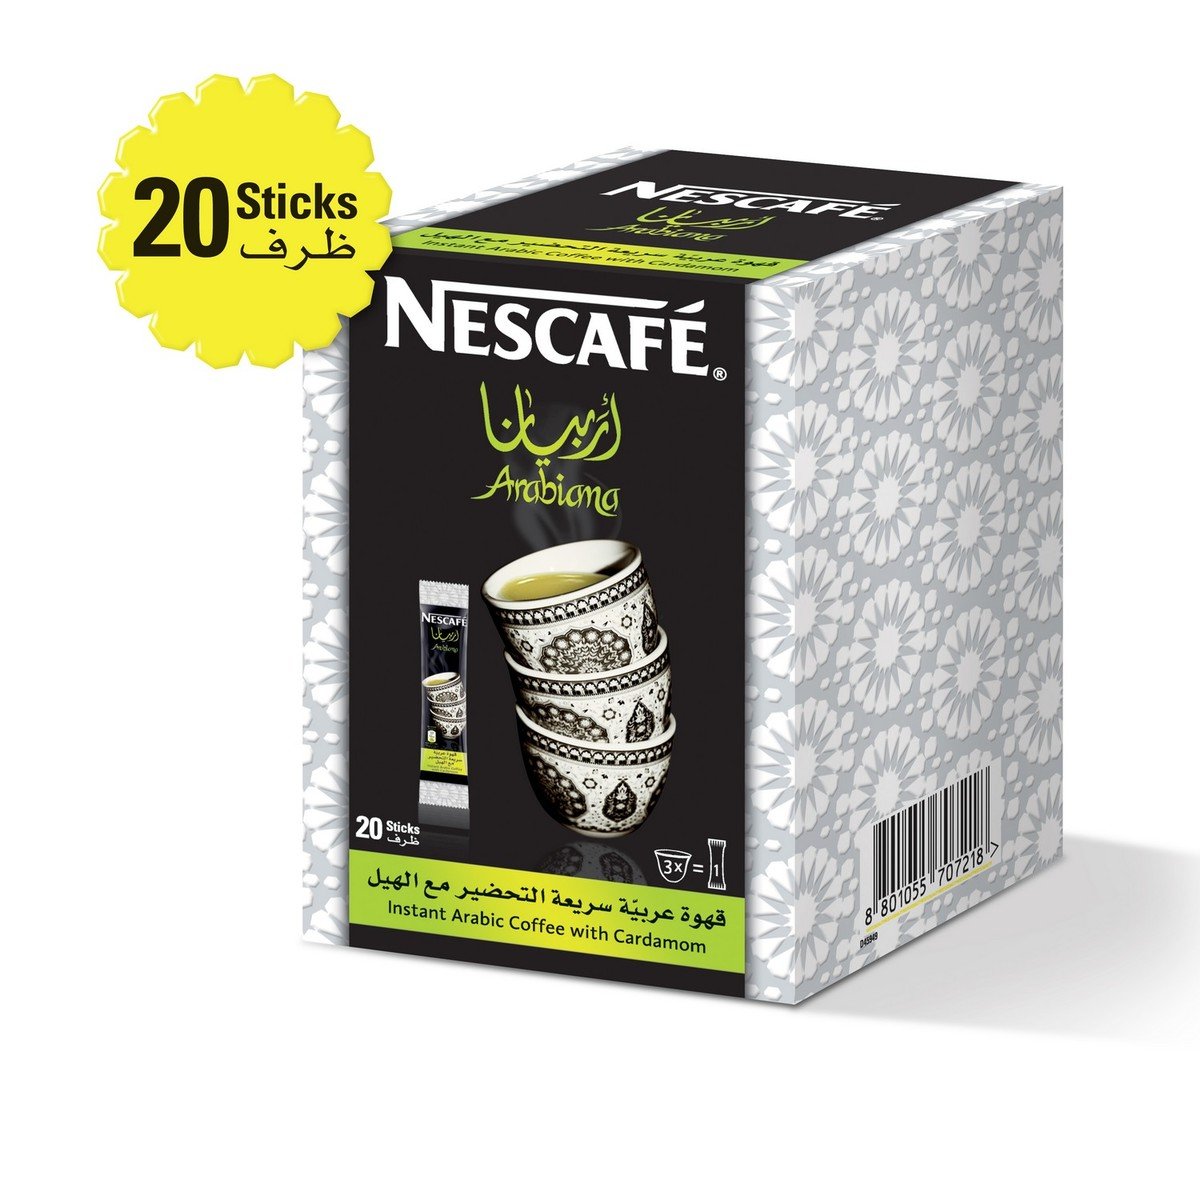 Nescafe Arabiana Instant Arabic Coffee with Cardamom 20 x 3 g + Cup